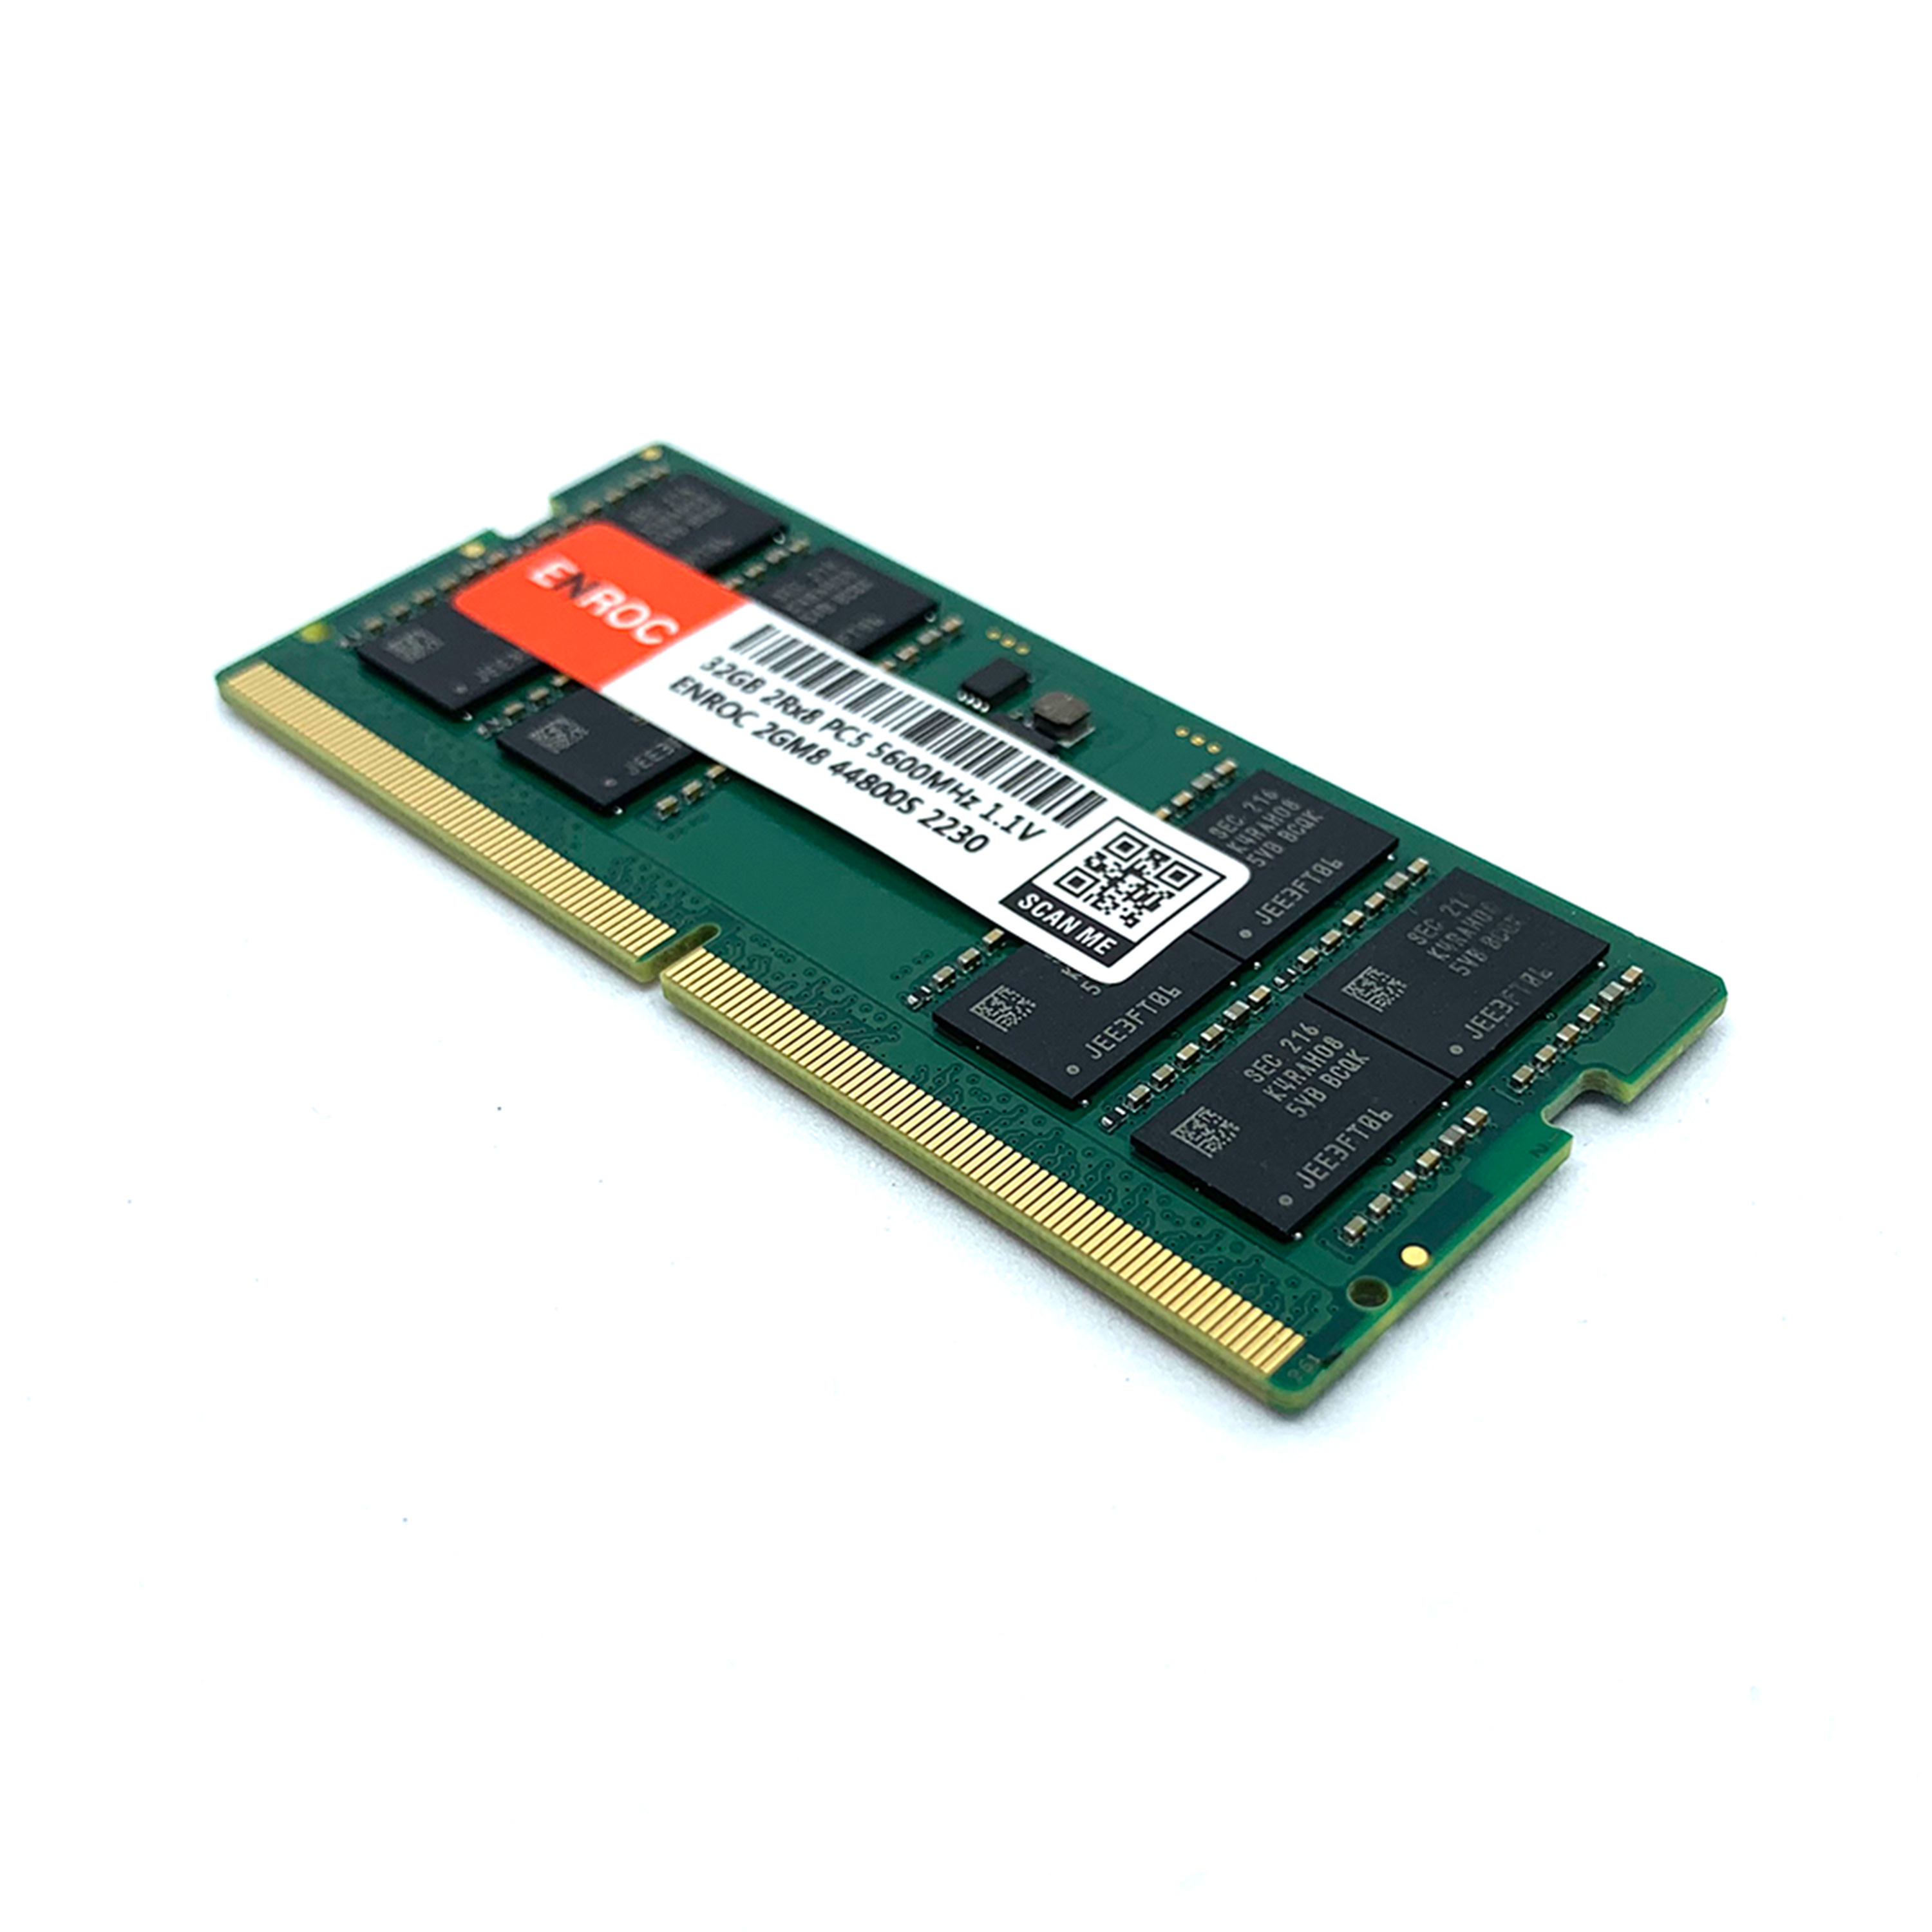 ENROC ERC5600 32GB 32 Arbeitsspeicher GB RAM SO-DIMM 5600 DDR5 DDR5 MHz